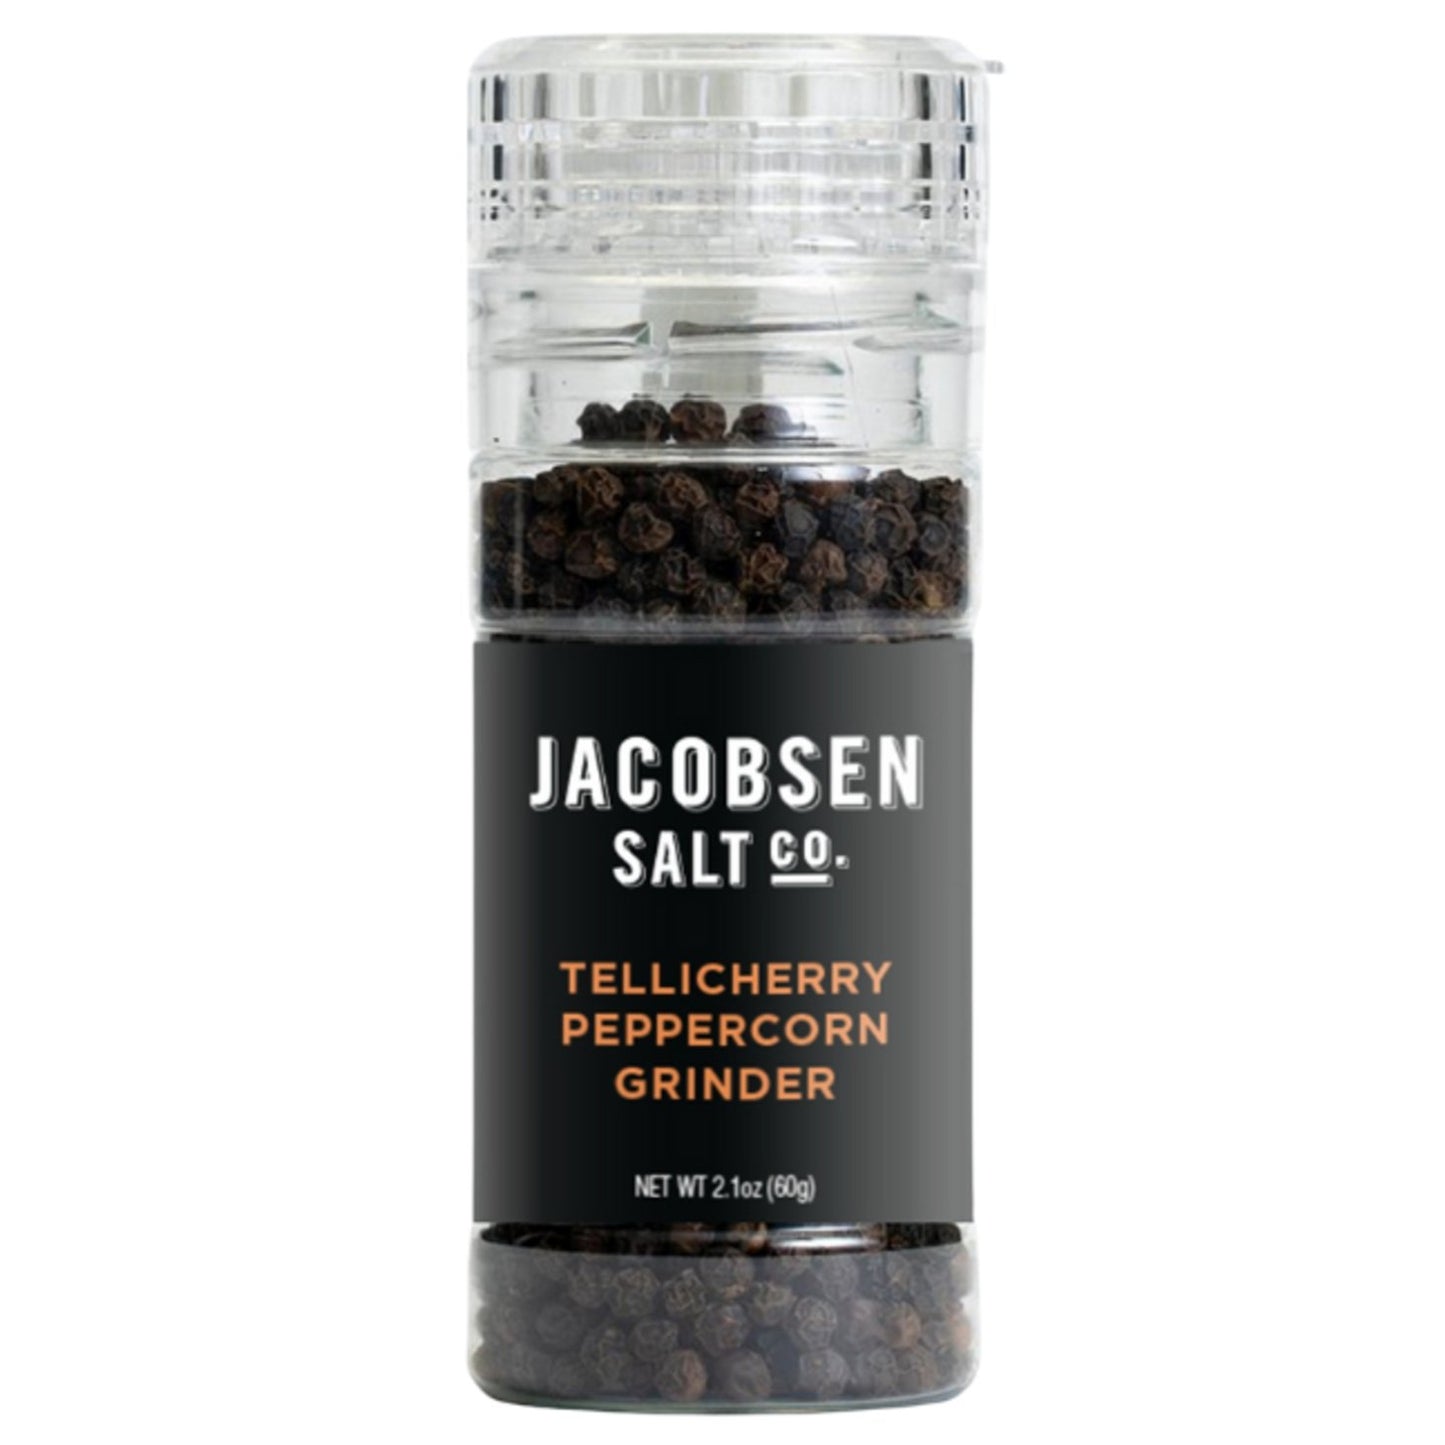 Jacobsen Salt Co - Tellicherry Peppercorn Grinder (2.1OZ) - The Epicurean Trader